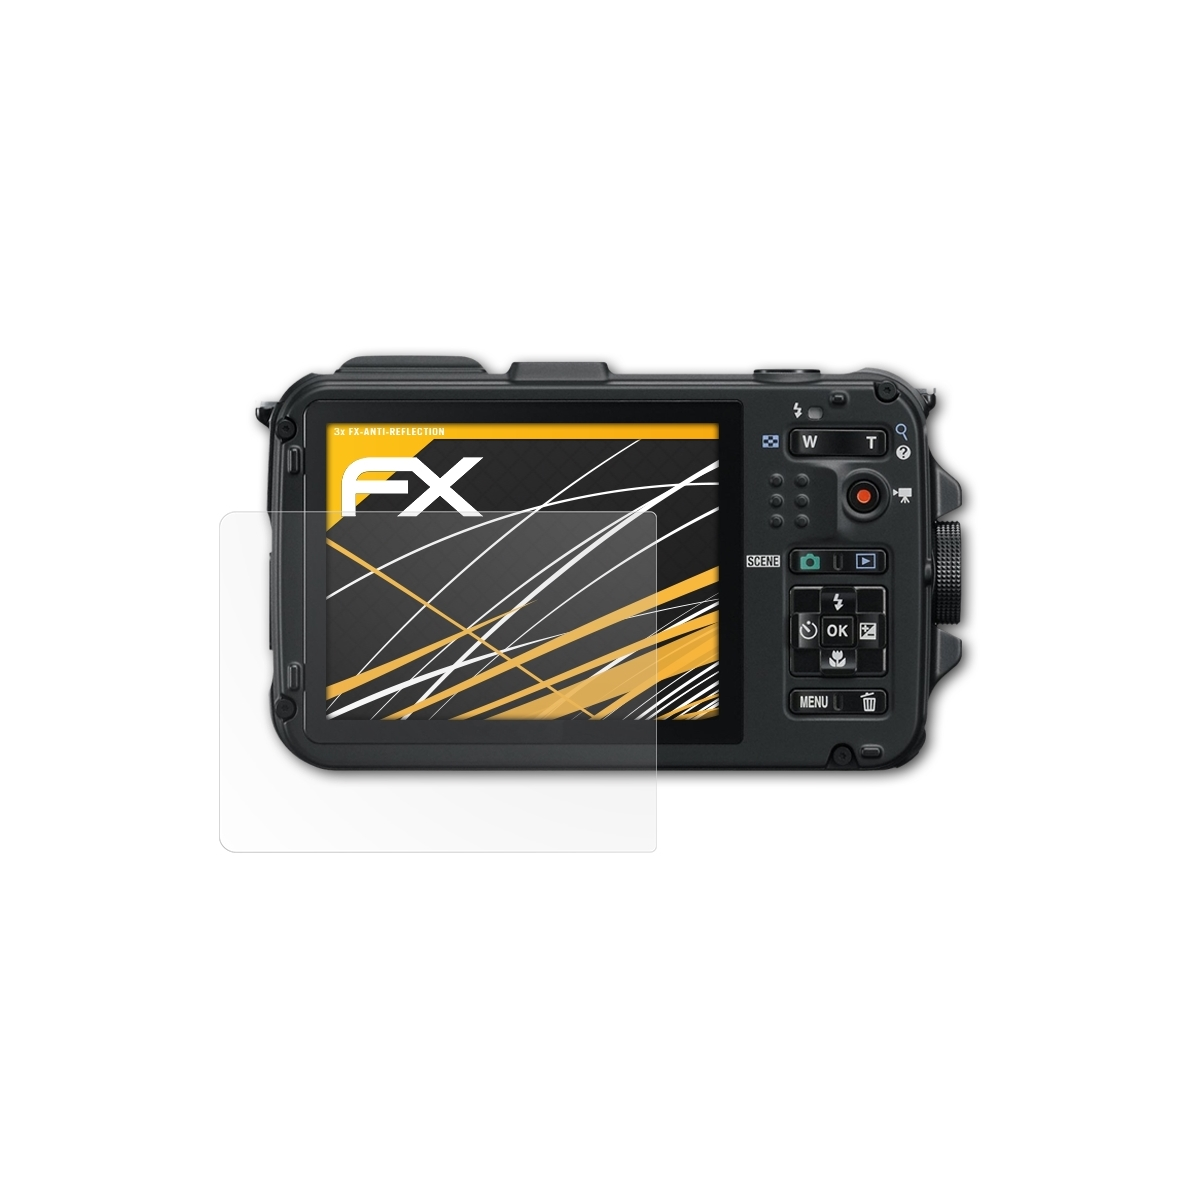 3x Coolpix FX-Antireflex AW100) ATFOLIX Nikon Displayschutz(für